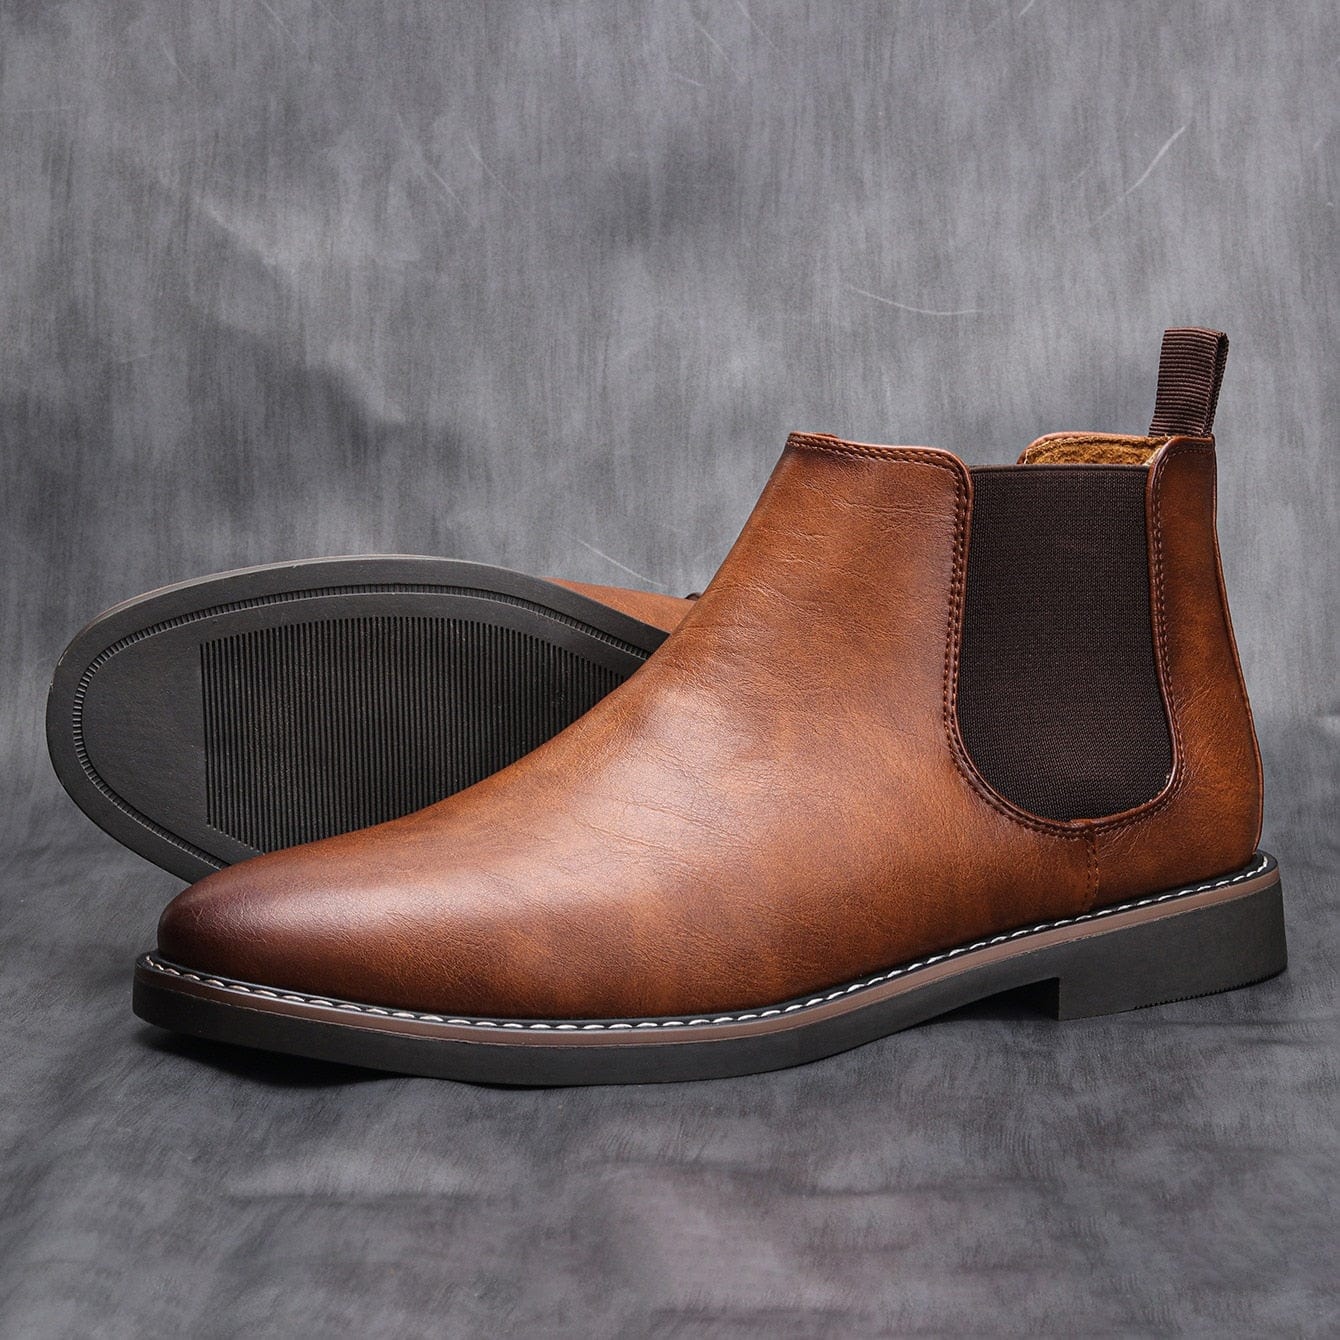 HeritageCraft™ Men's Retro Comfort Chelsea Boots